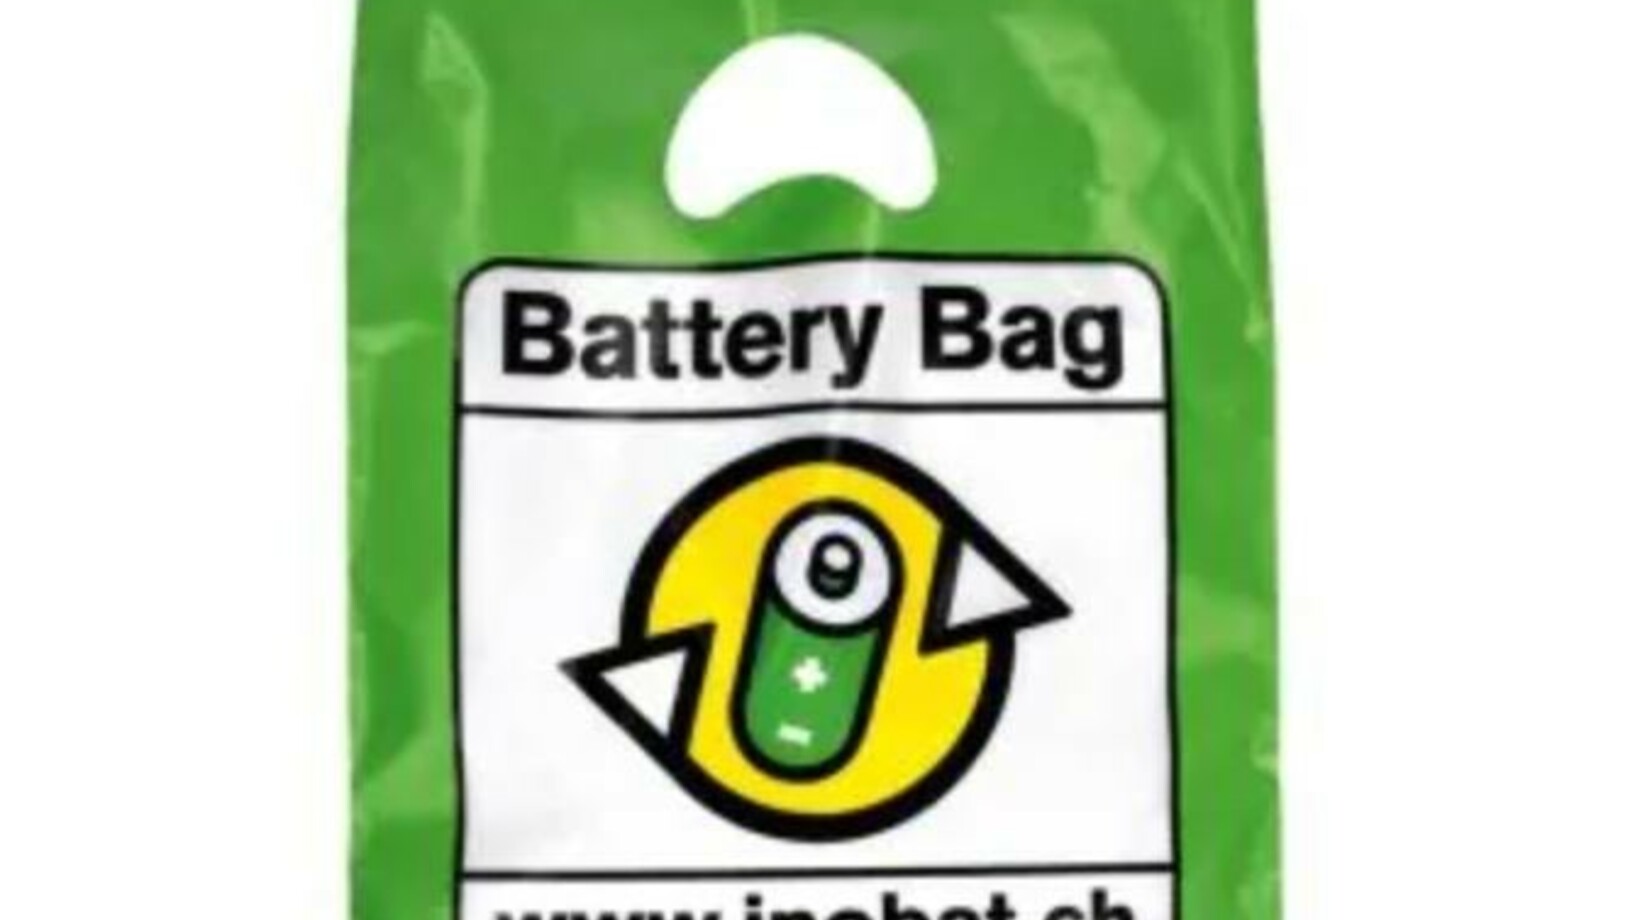 Battery bag